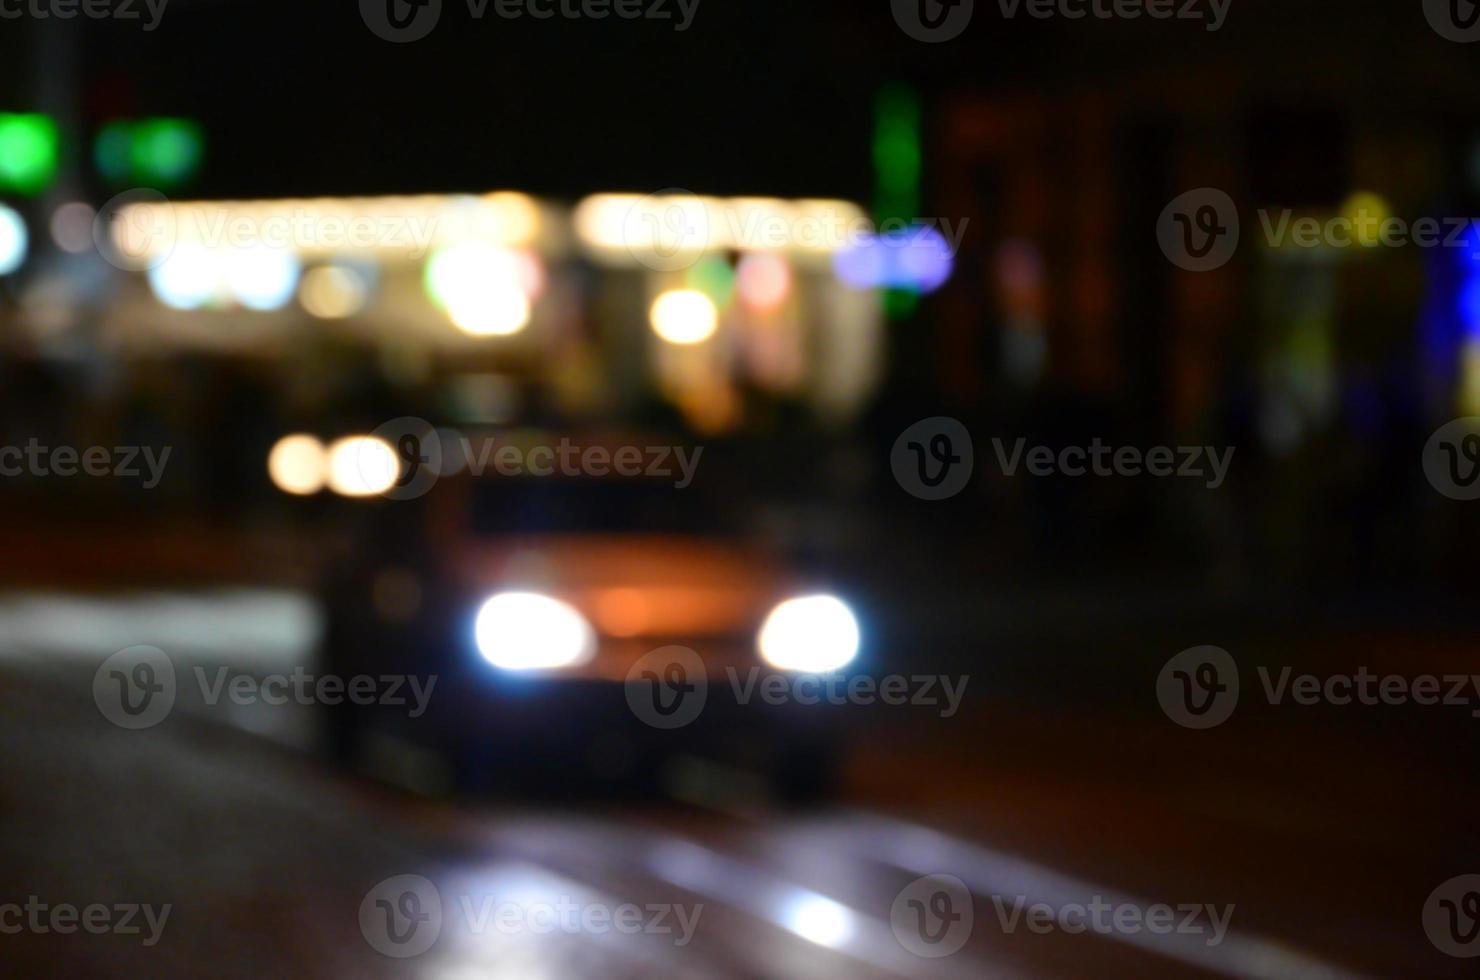 escena nocturna borrosa de tráfico en la carretera. imagen desenfocada de coches que viajan con faros luminosos. arte bokeh foto